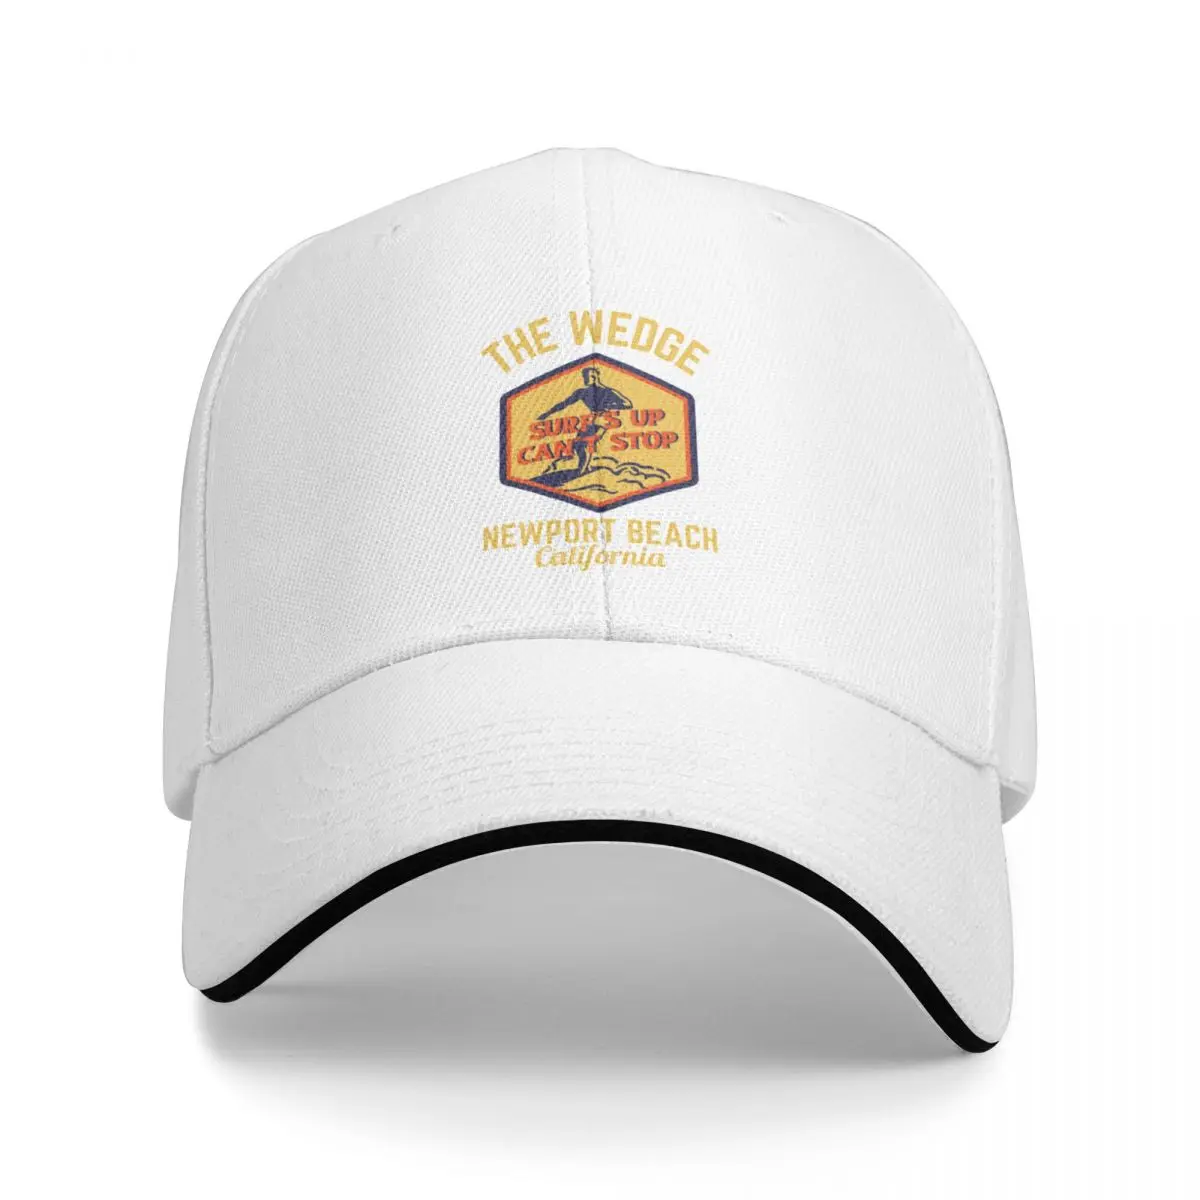 Ретро Клин Ньюпорт-Бич, Калифорния, золотой текст- бейсболка для ретро-пляжа / ретро-серфинга, дизайнерская шляпа, мужская кепка на день рождения, женская кепка